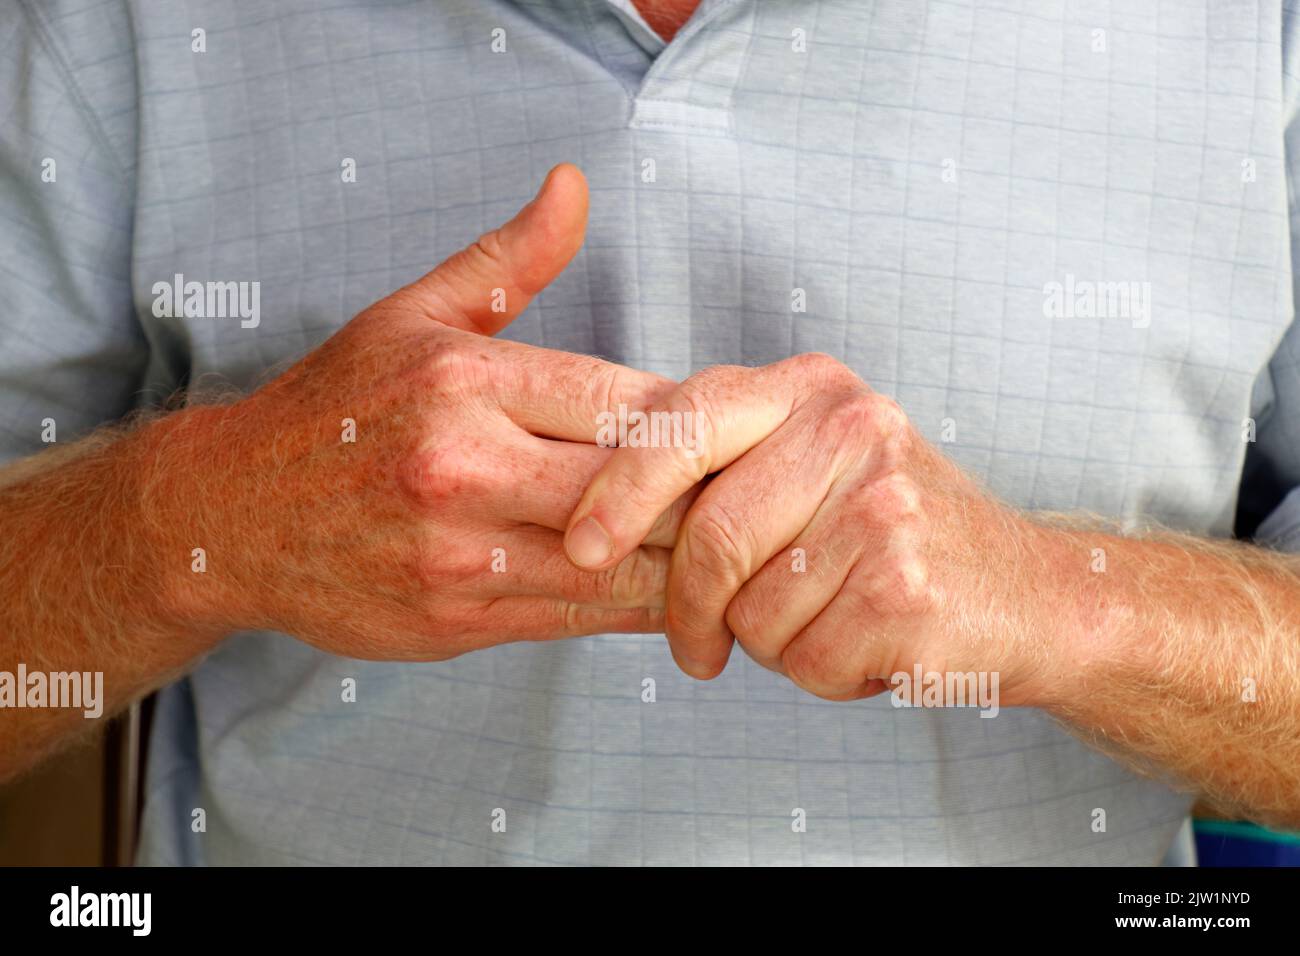 Nahaufnahme von reifen kaukasischen Männern mit der linken Hand, die die Finger seiner rechten Hand massieren, um Schmerzen und Schmerzen in Muskeln und Gelenken zu lindern. Stockfoto